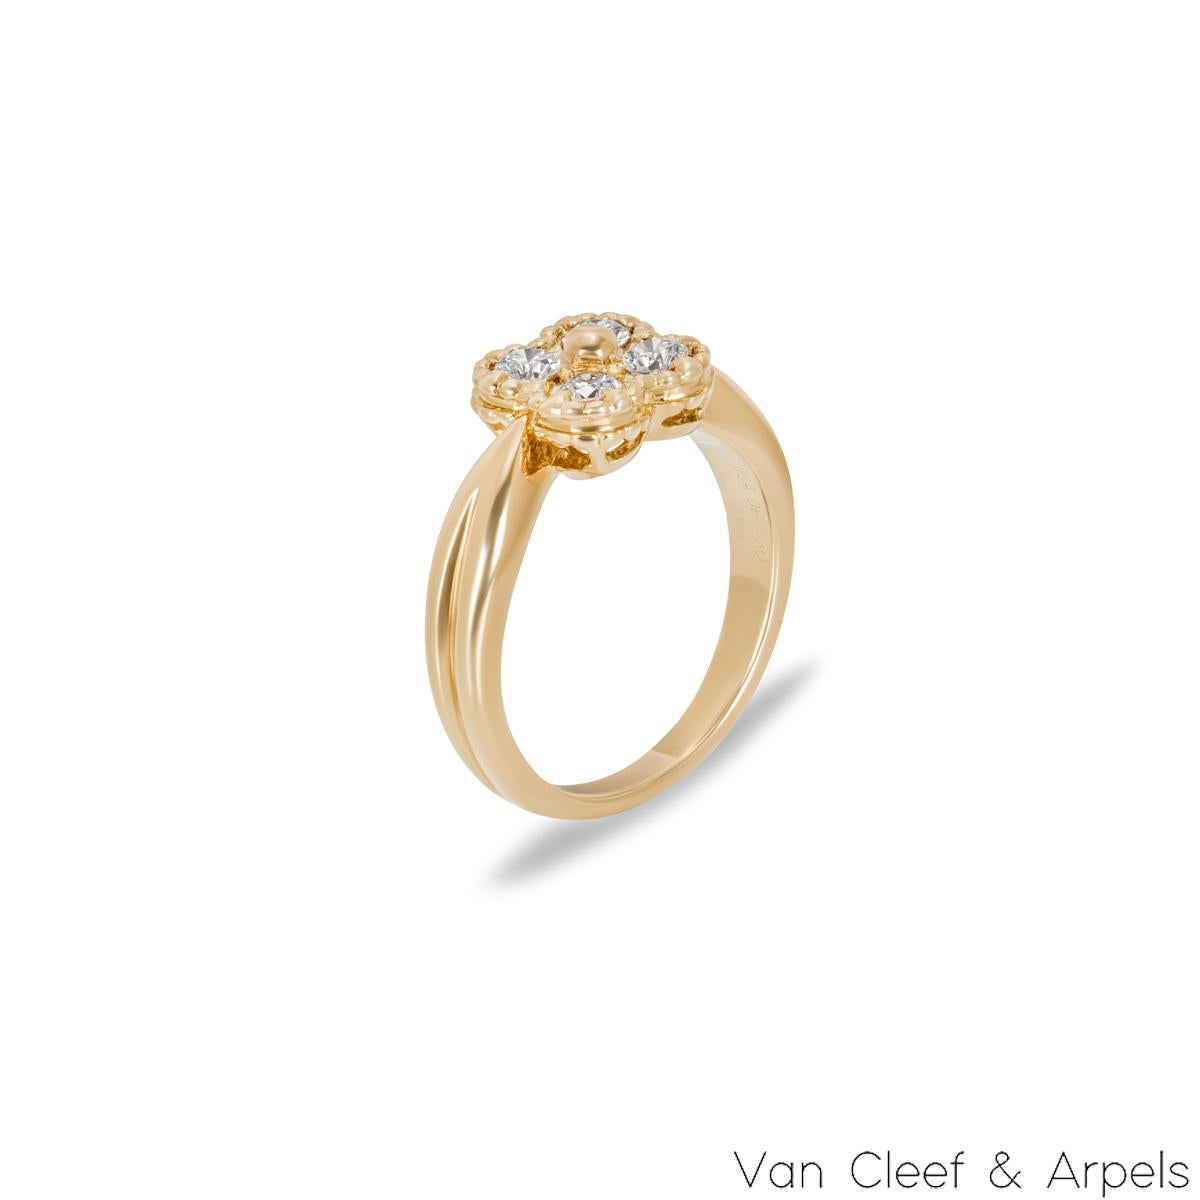 Ravissante bague en or jaune 18 carats à diamants Van Cleef & Arpels de la collection Arno. La bague est ornée d'un motif de trèfle terminé par un bord perlé, serti de quatre diamants ronds de taille brillant d'un poids total approximatif de 0,28ct,